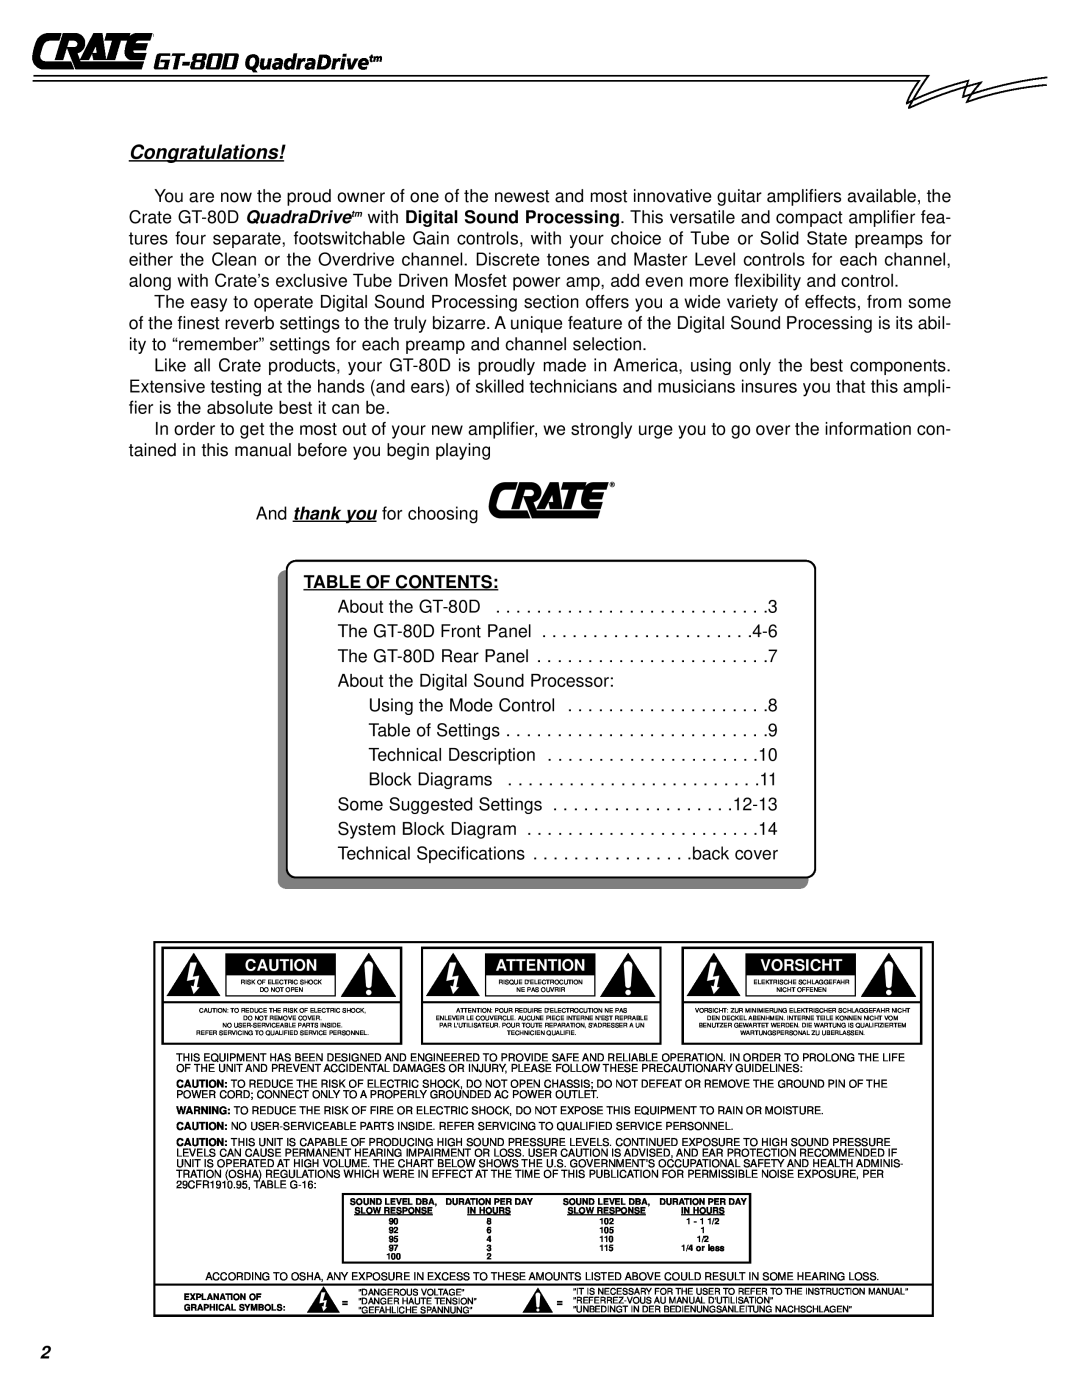 Crate Amplifiers owner manual GT-80D QuadraDrivetm, Congratulations 